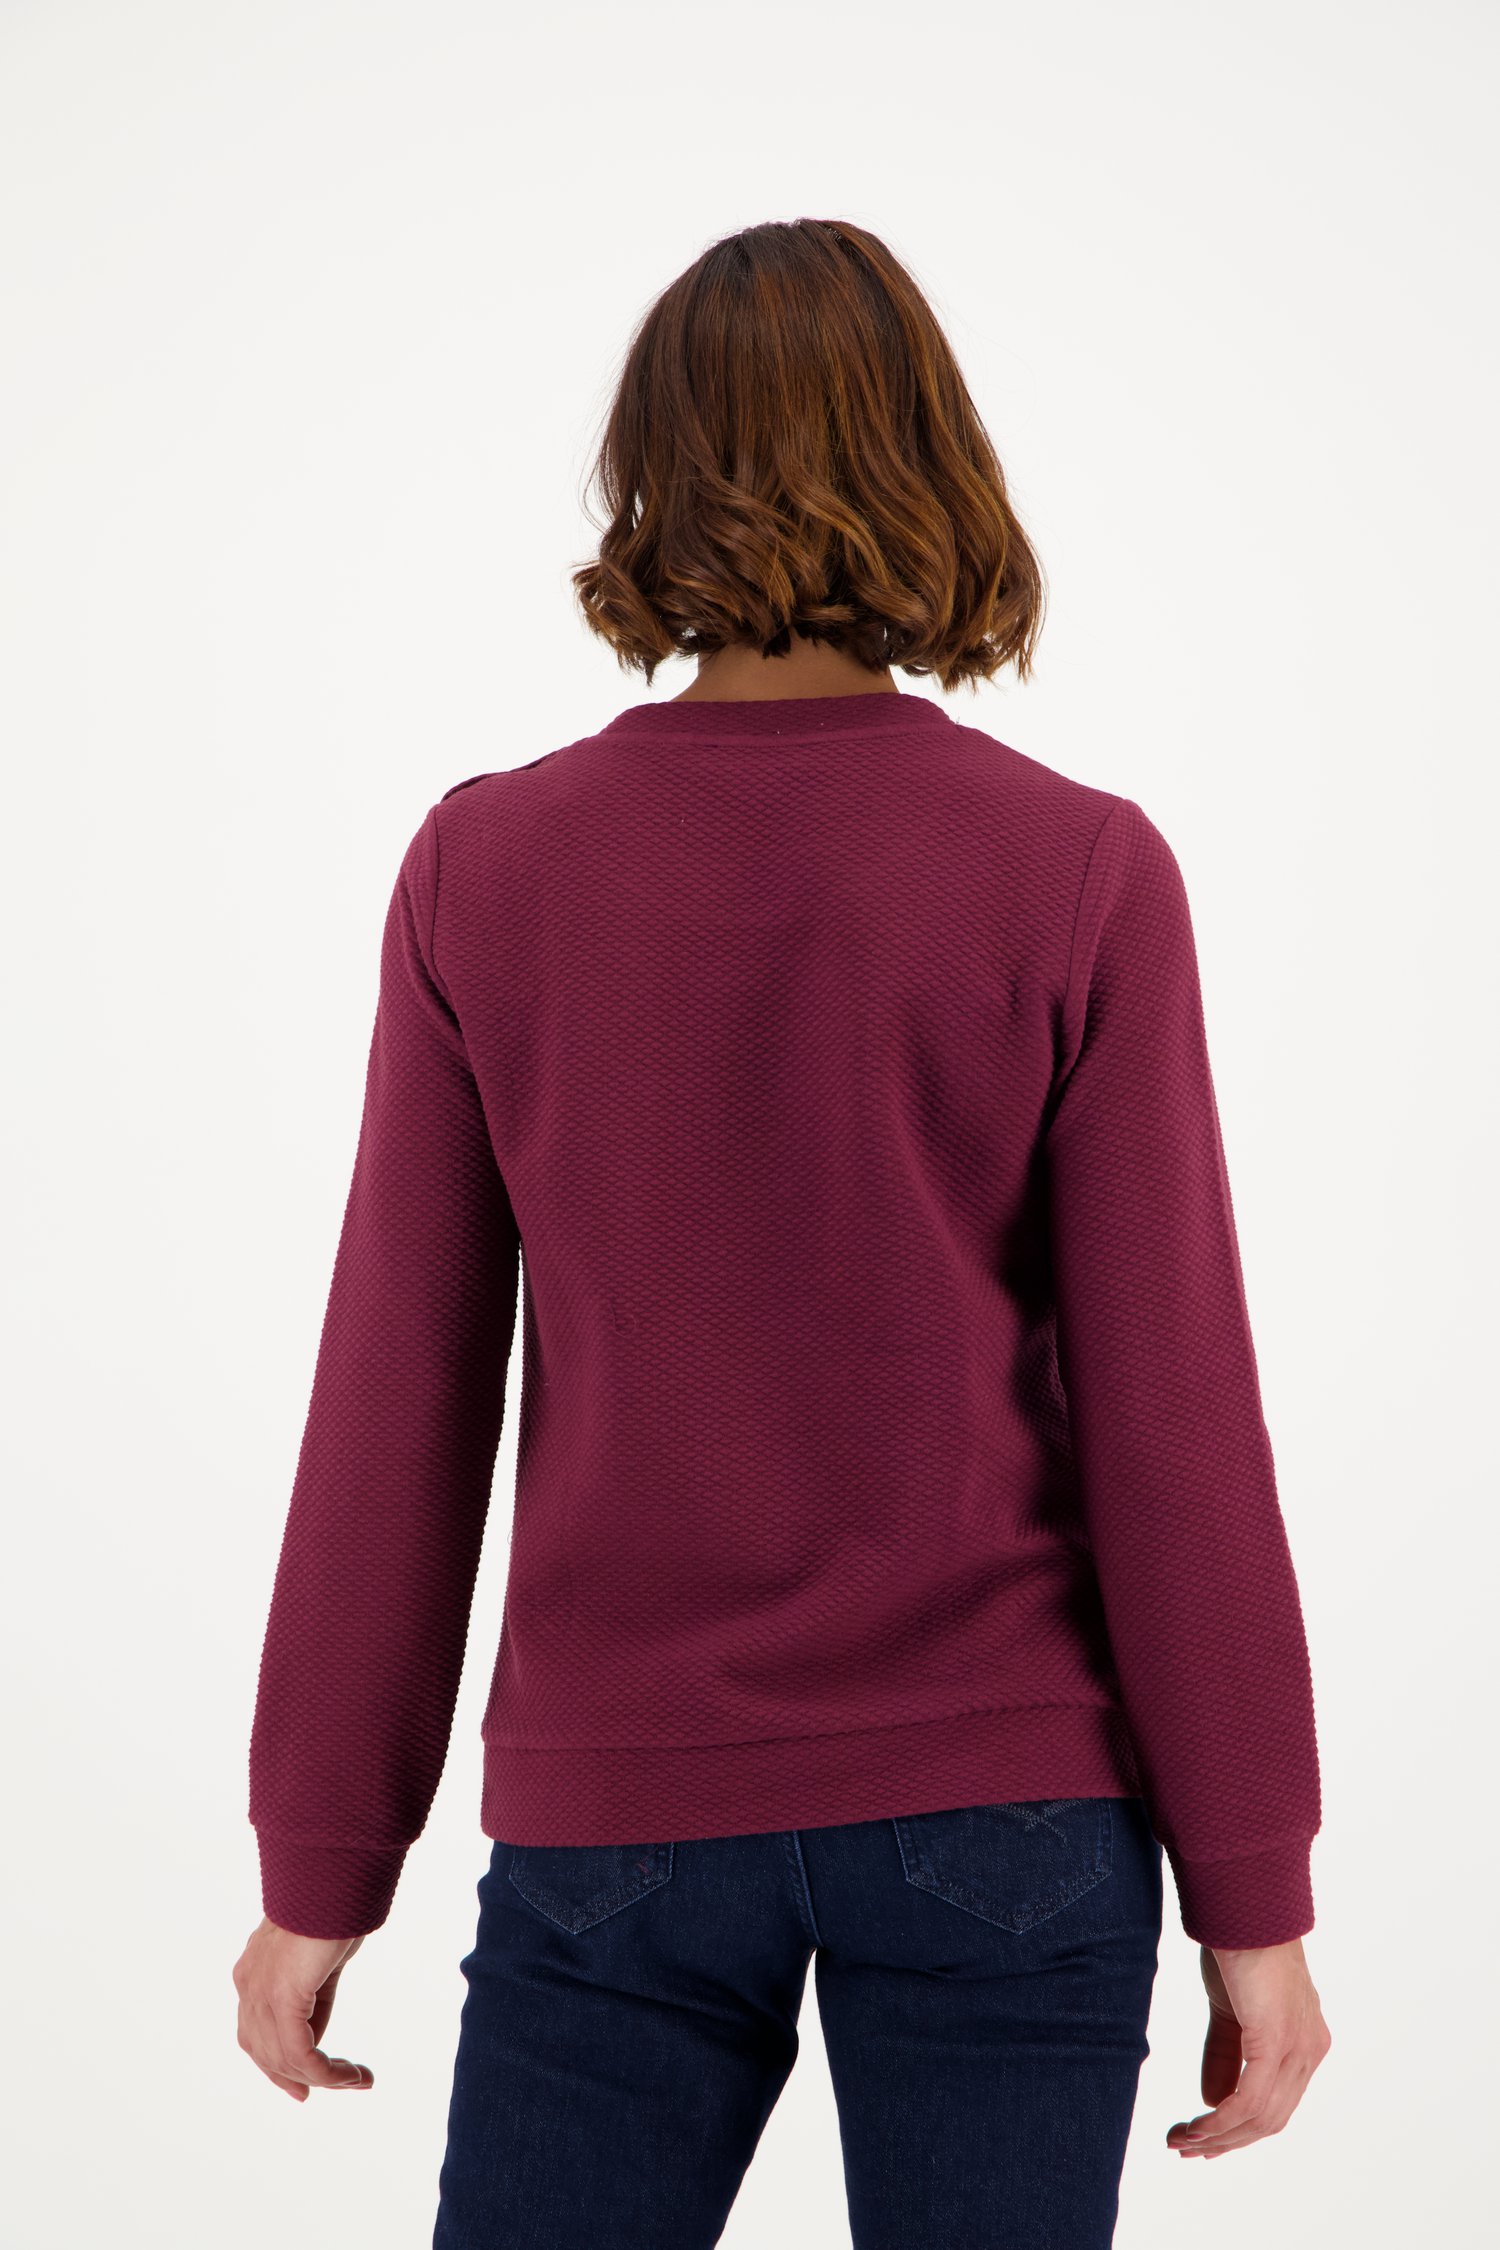 Wijnrode trui met detailknopen van Claude Arielle voor Dames